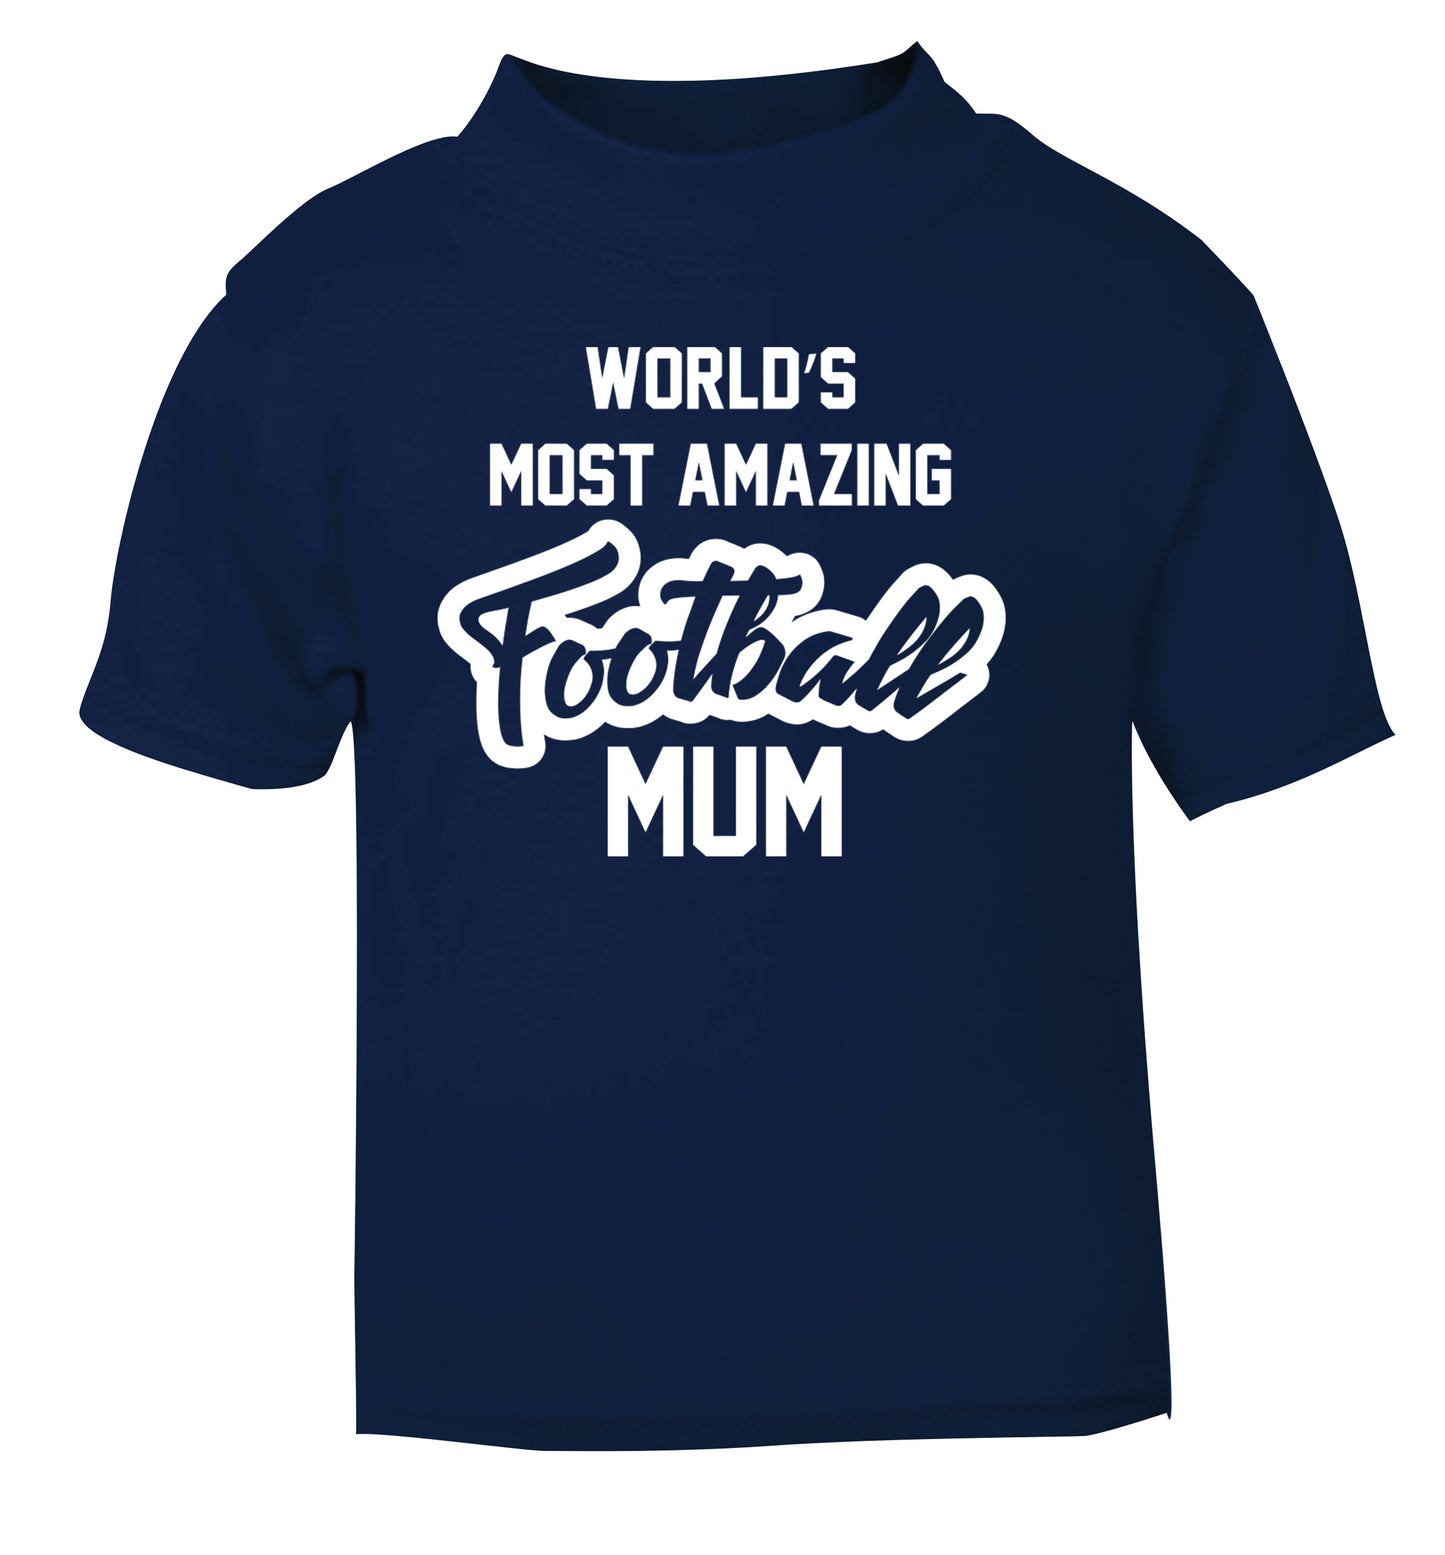 Worlds most amazing football mum navy Baby Toddler Tshirt 2 Years